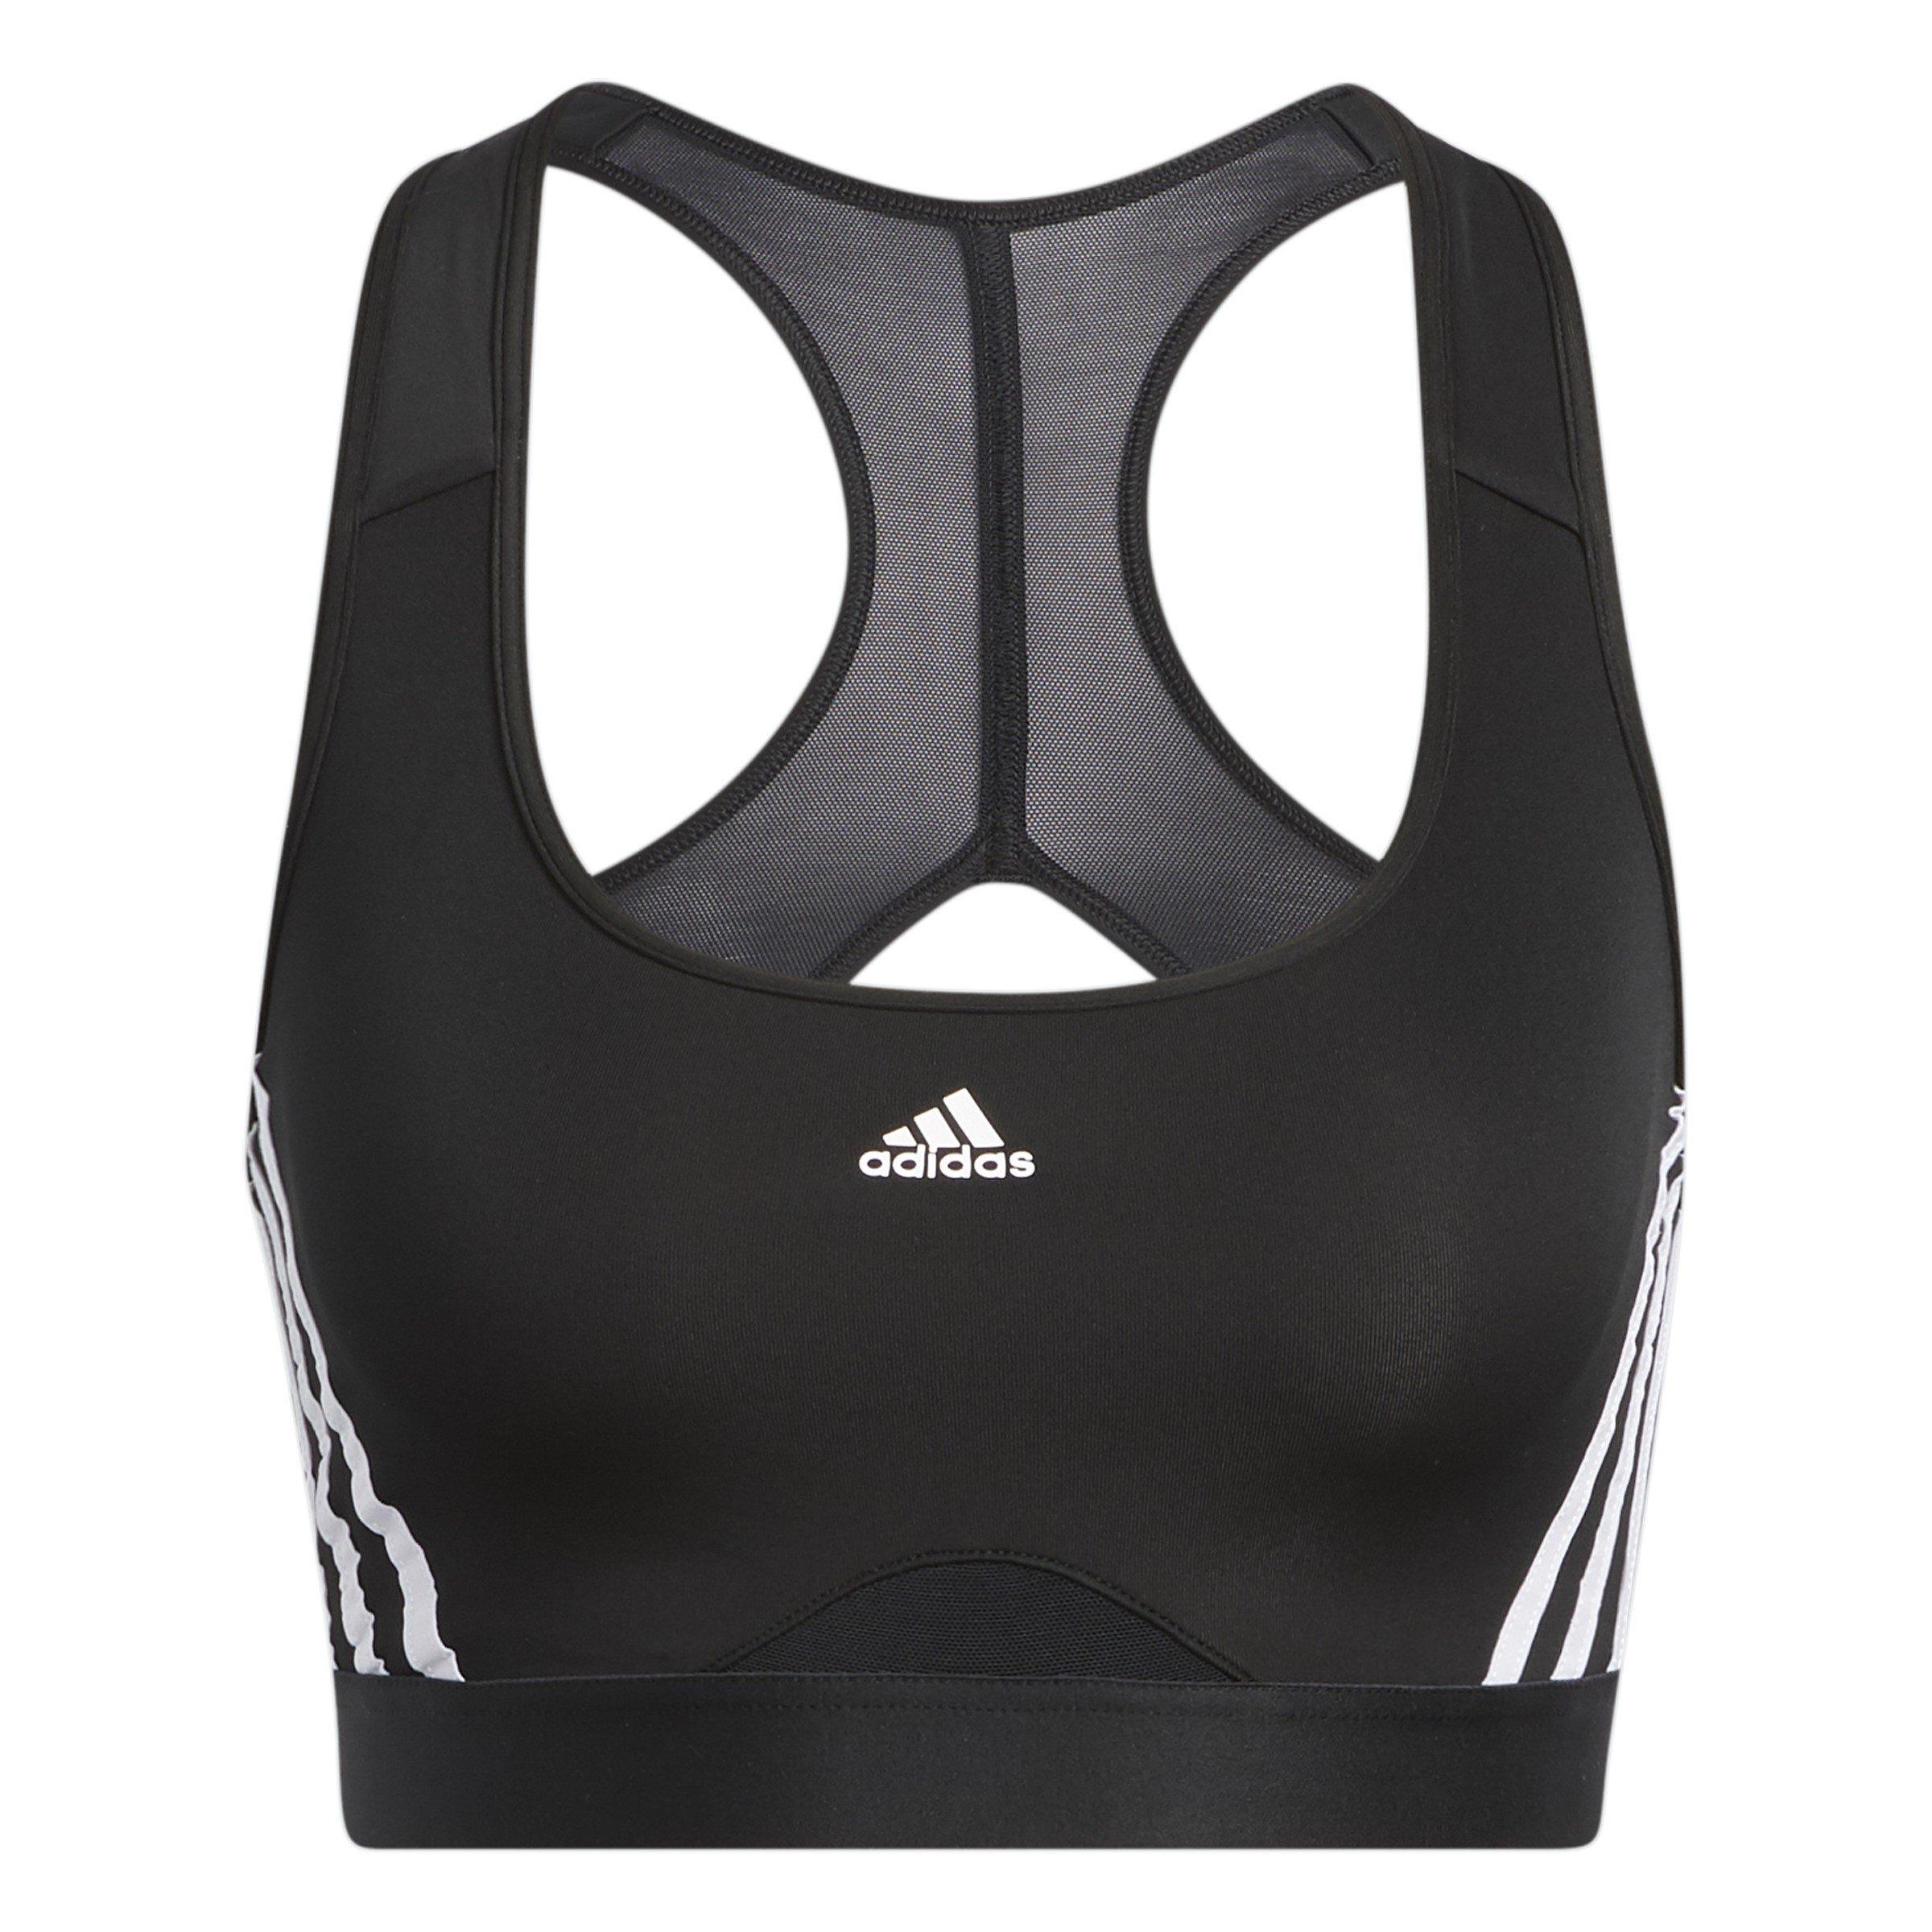 Athletic Bra By Adidas Size: Xl